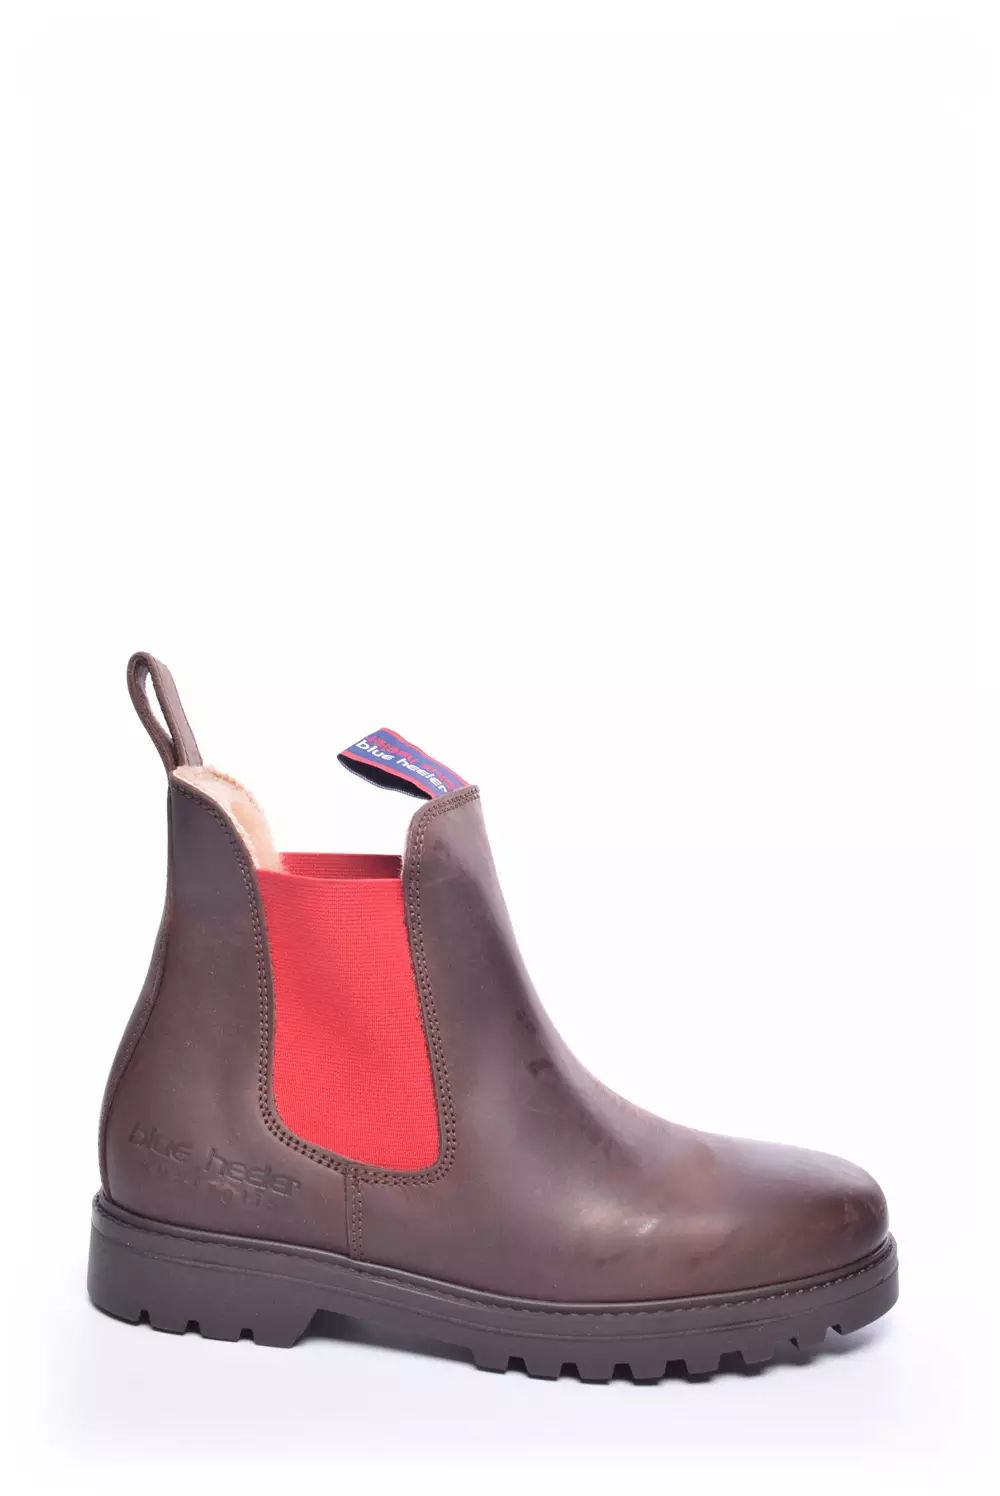 Satisfy Bulk High exposure Pantofi damă second hand & outlet marca Superfit | Descoperă stilul tău -  shoemix.ro